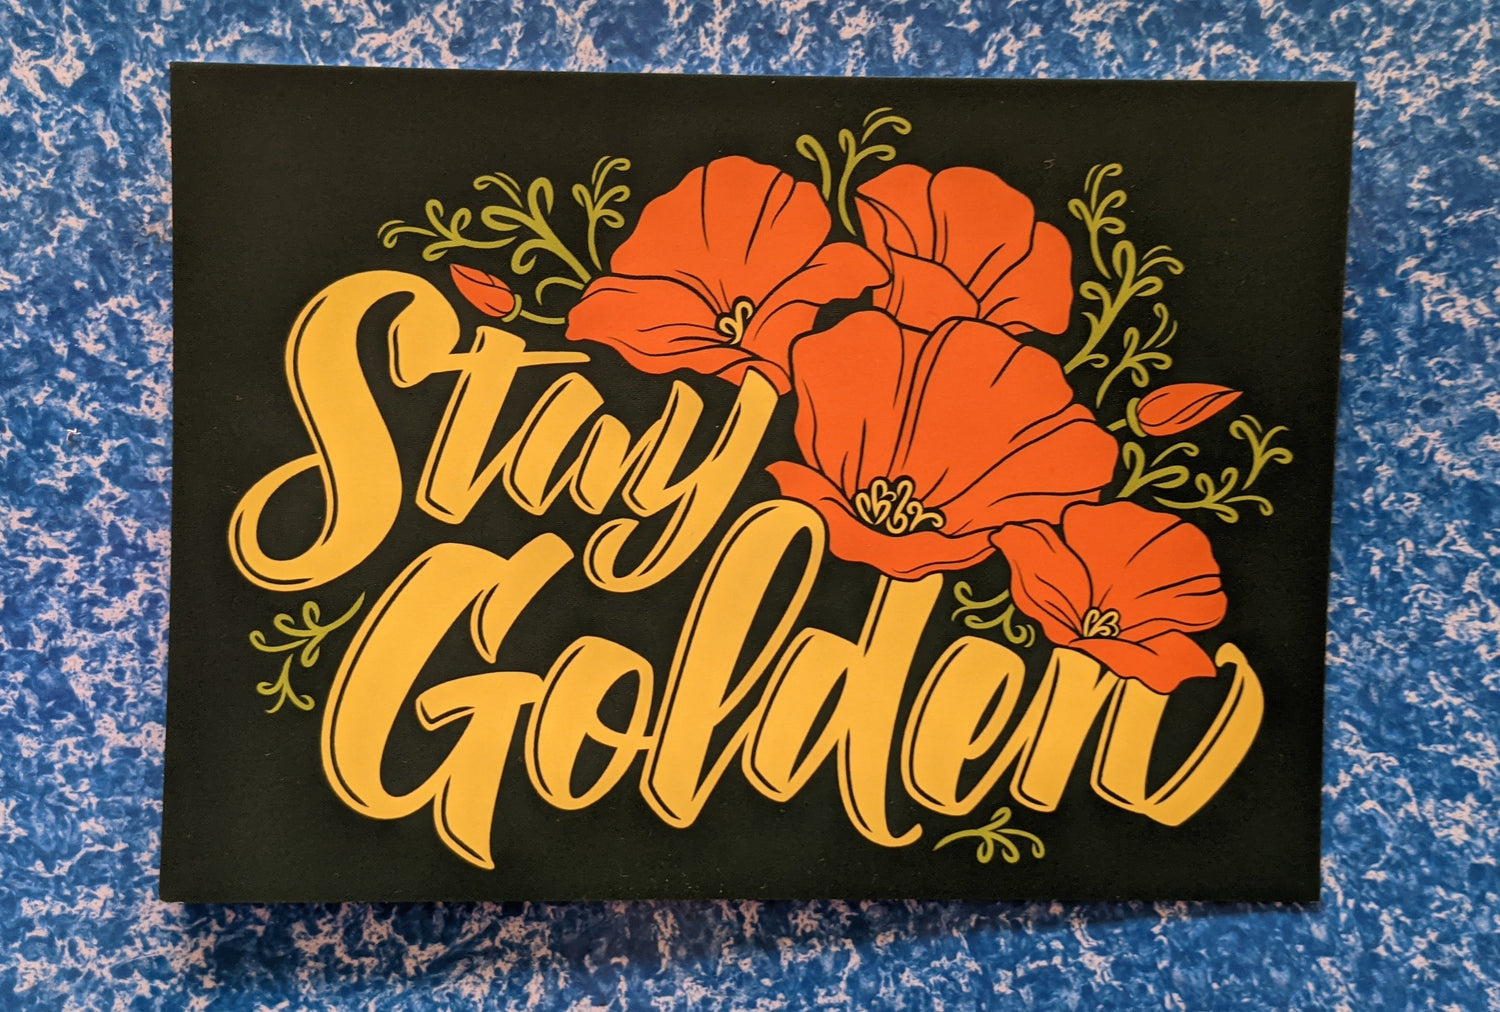 Stay Golden poppy postcard by Poppy & Quail